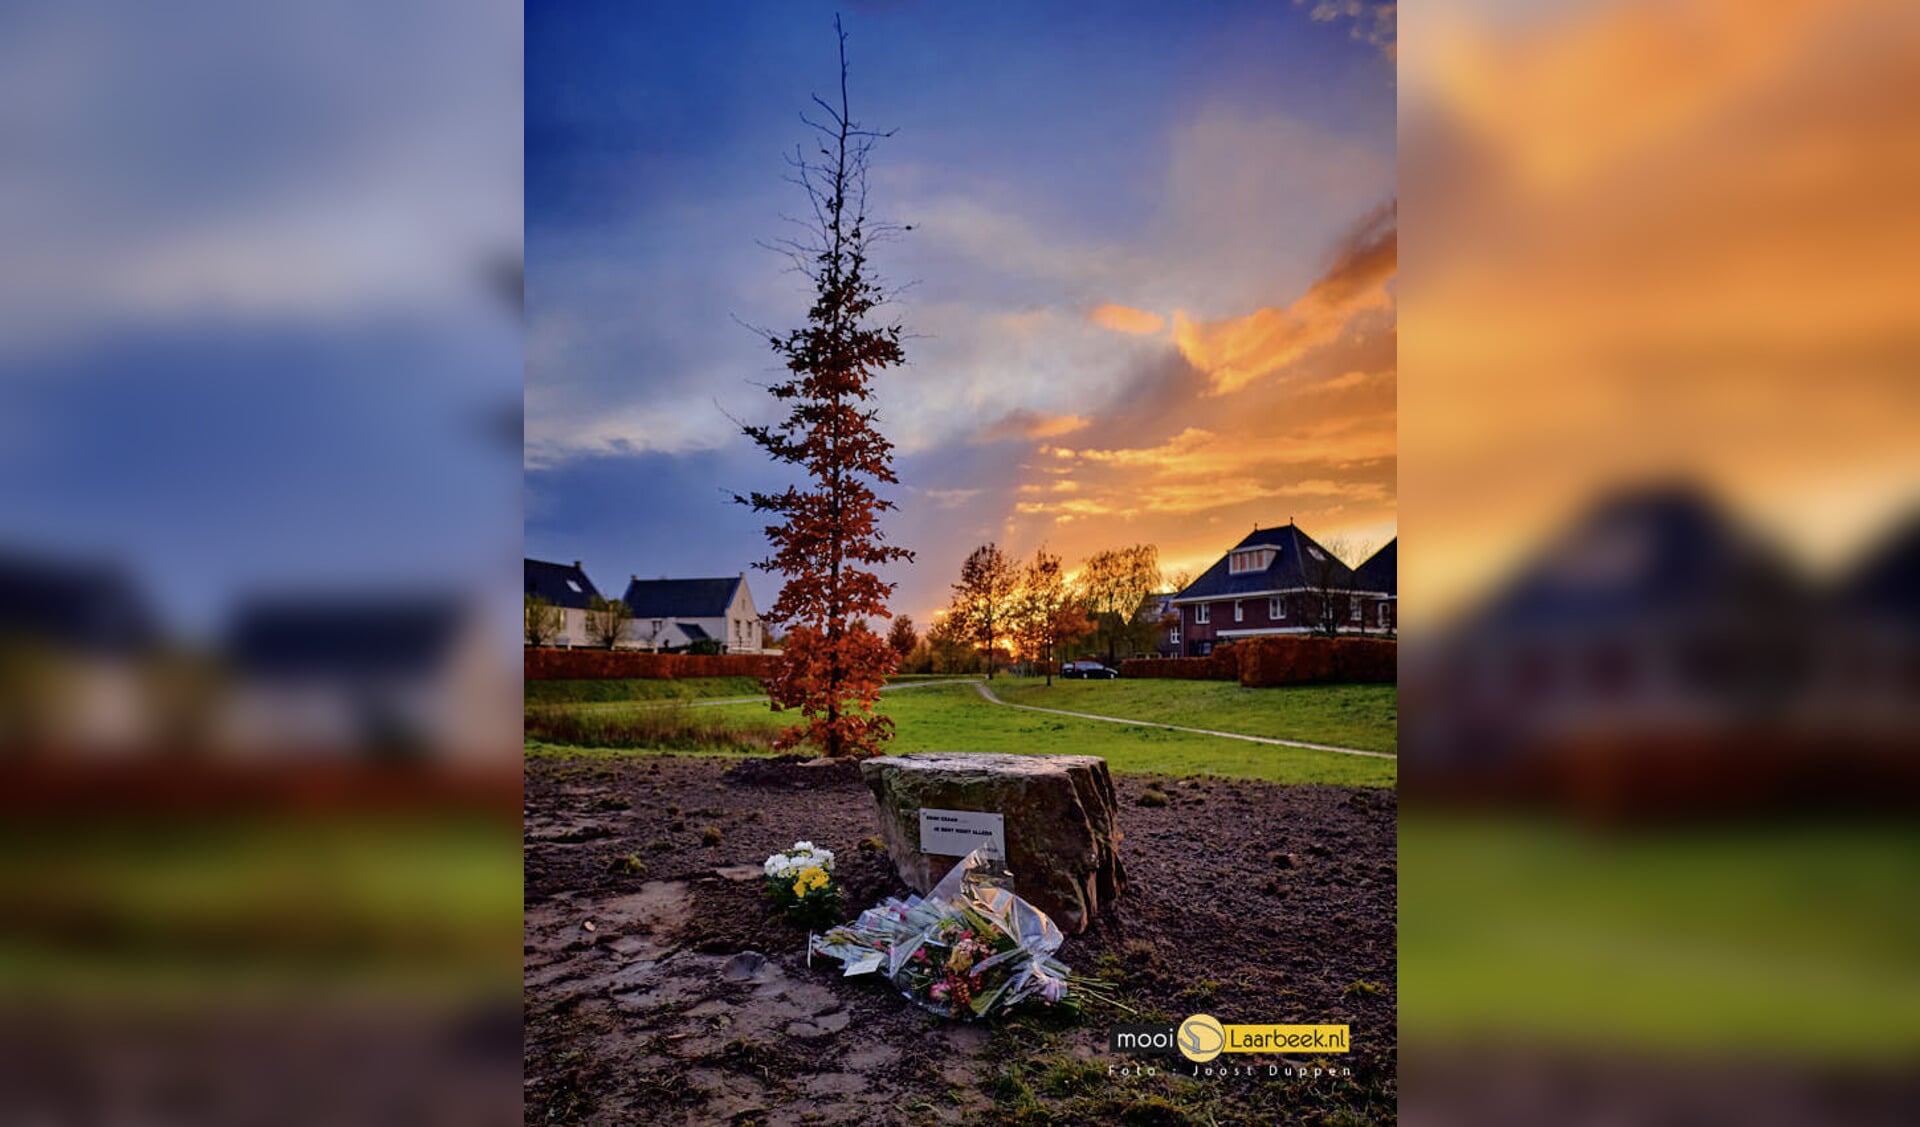 De gedenkboom en gedenksteen bij het Clovishof in Aarle-Rixtel